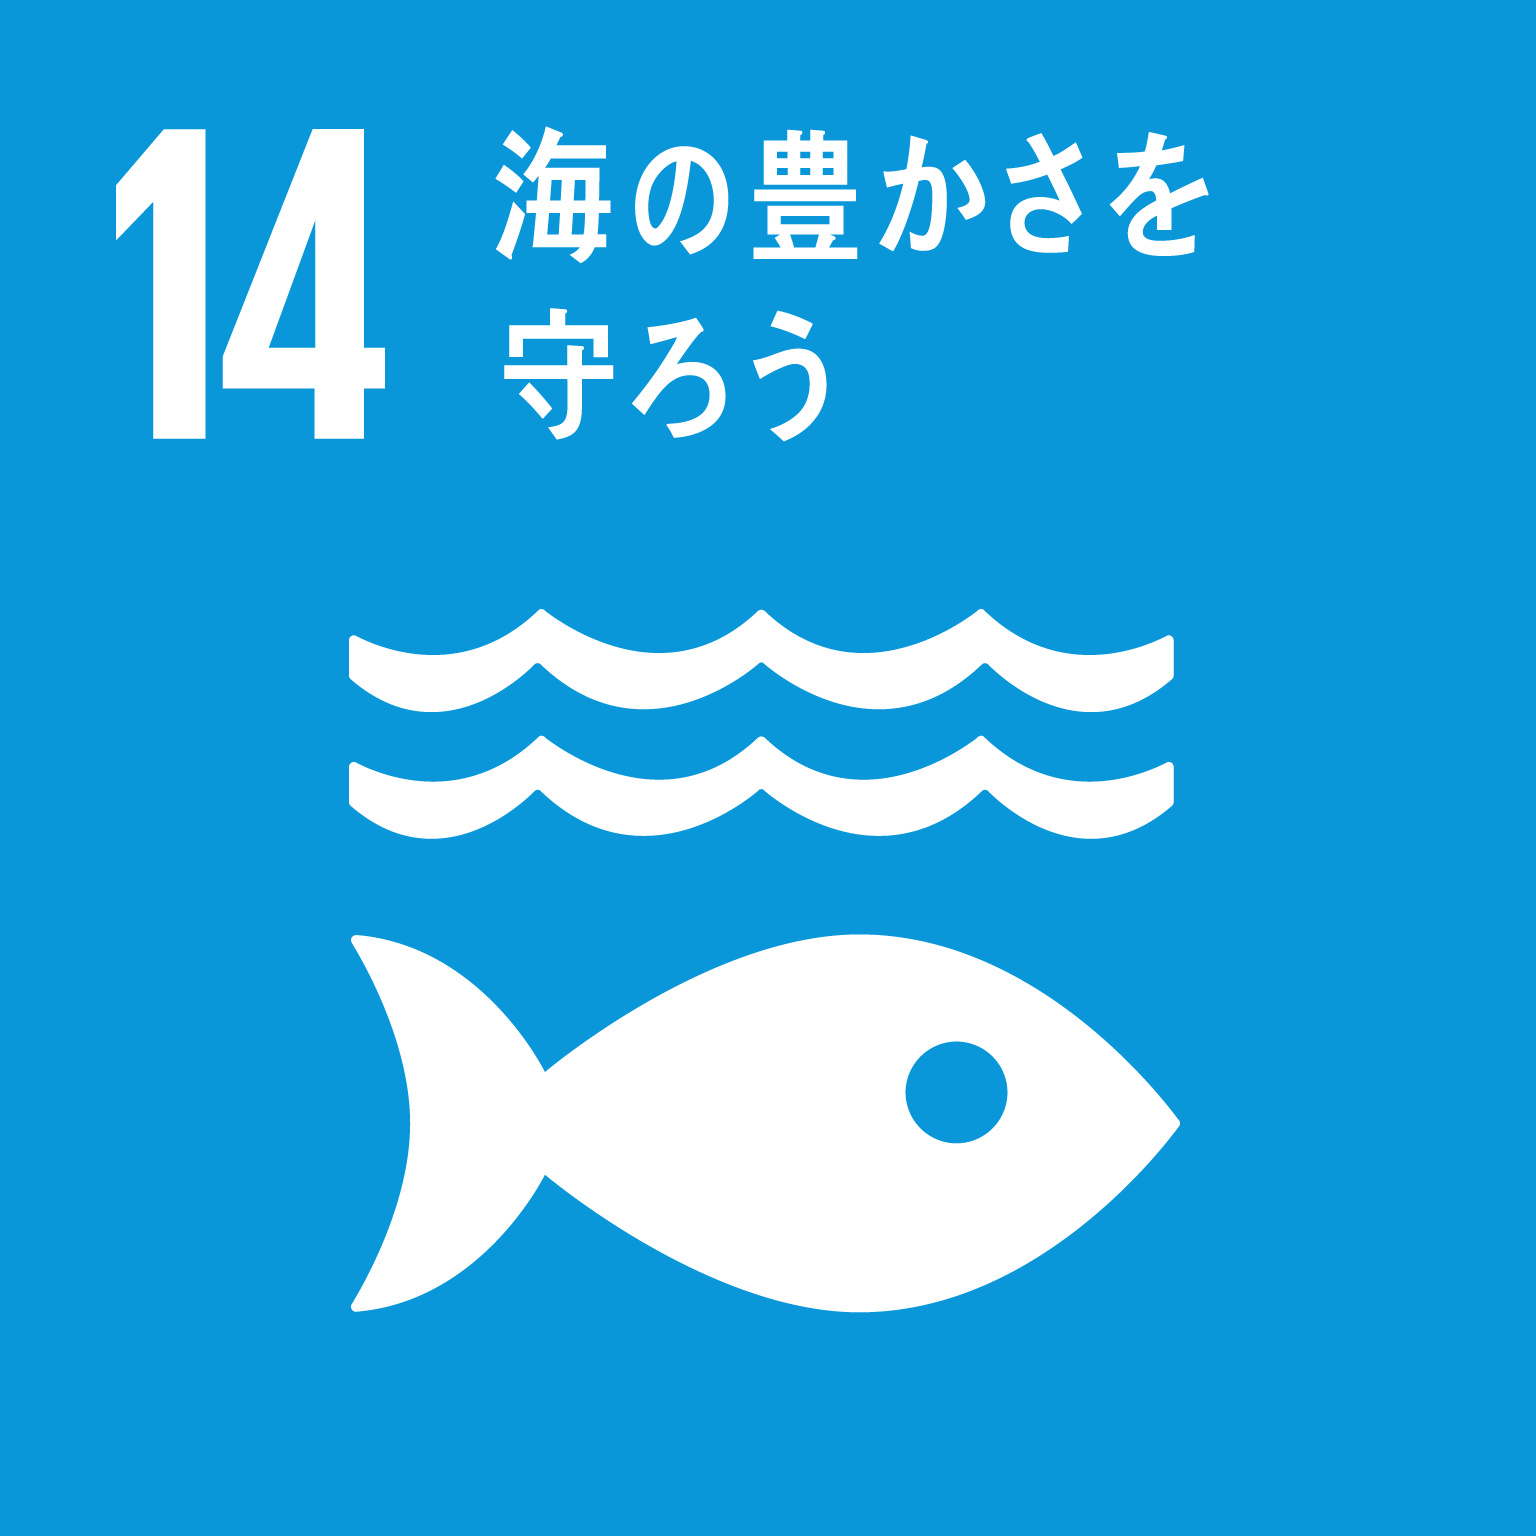 14：海の豊かさを守ろう